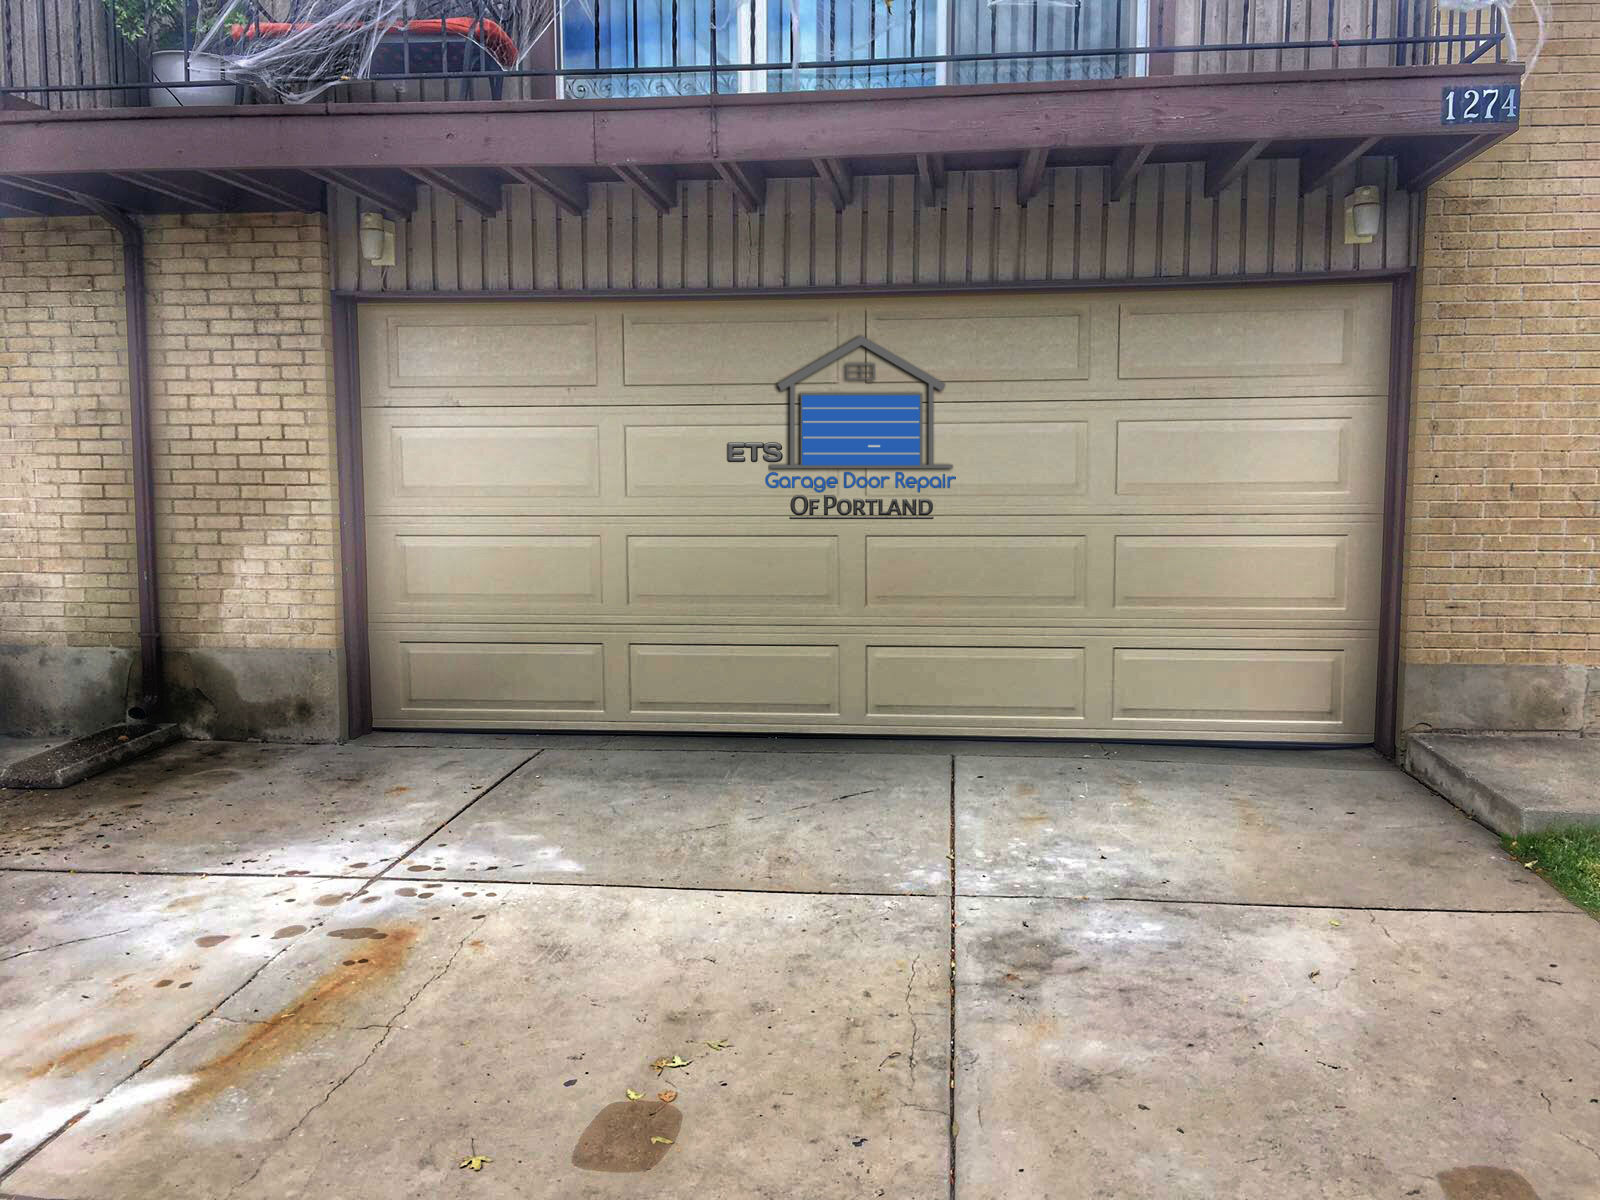 ETS Garage Door Repair Of Lake Oswego - Garage Door Repair & Installation Services18